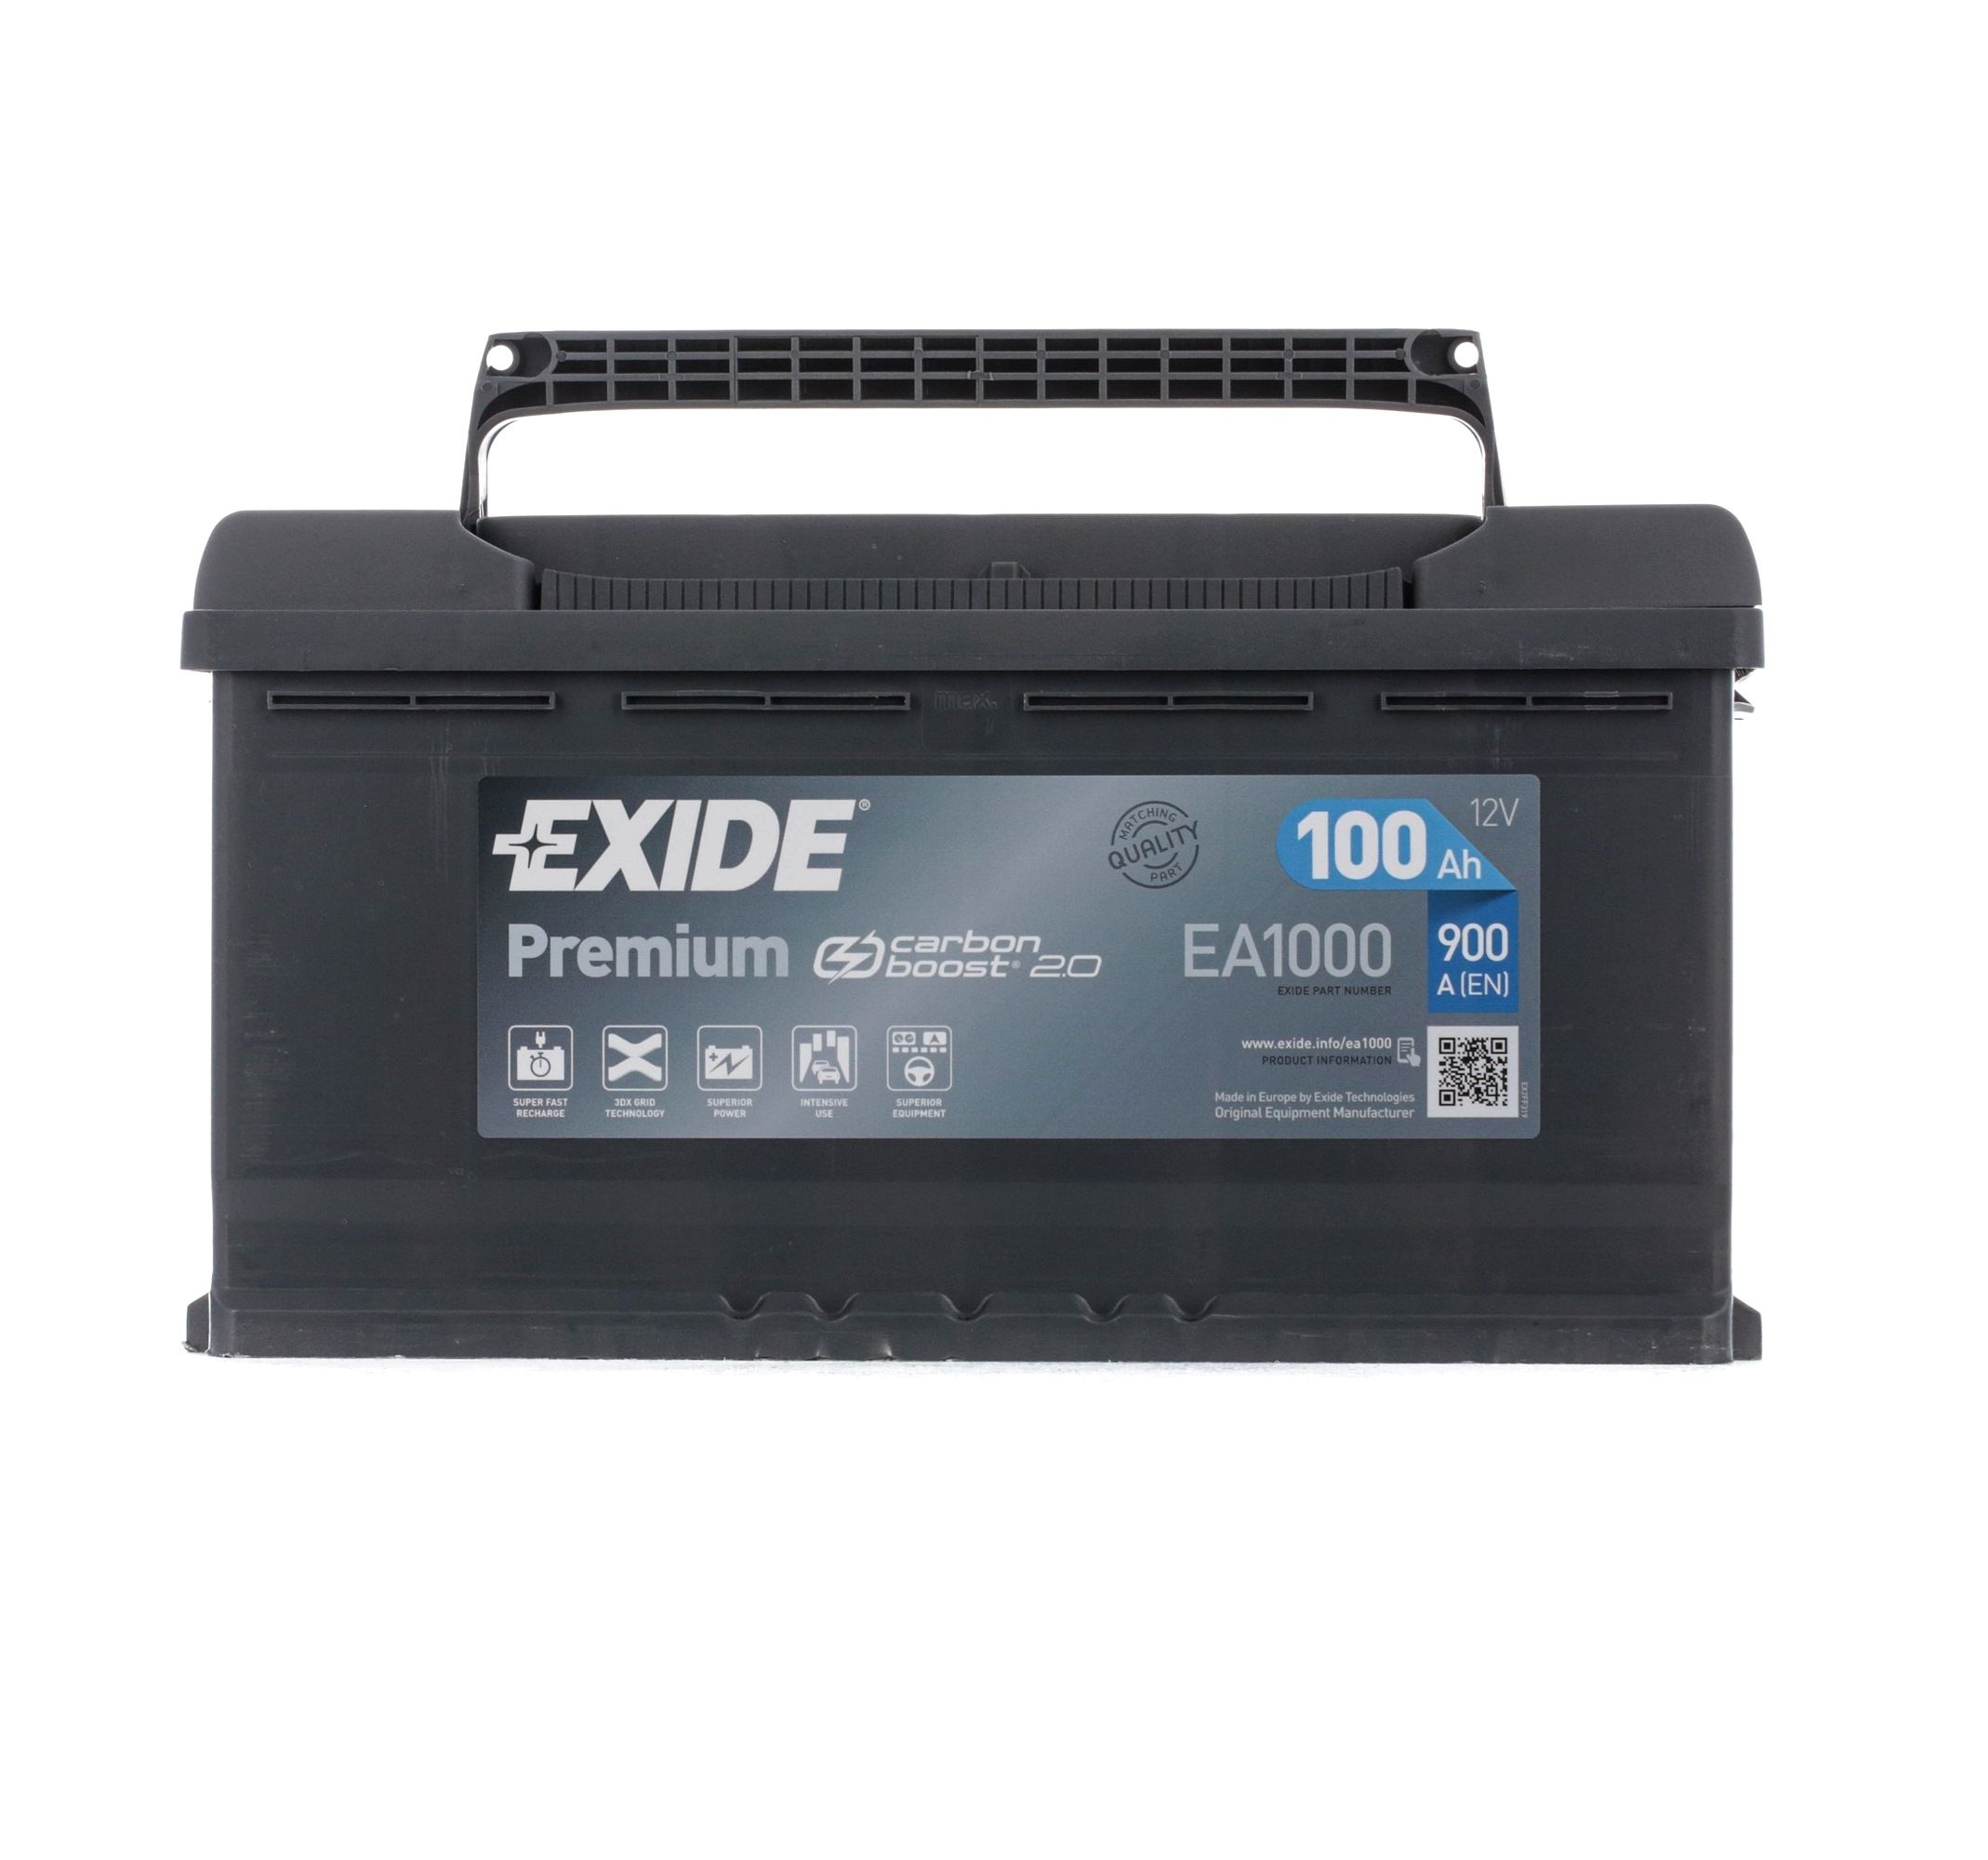 EXIDE EA1000 VOLVO Starterbatterie 12V 100Ah 900A B13 Bleiakkumulator